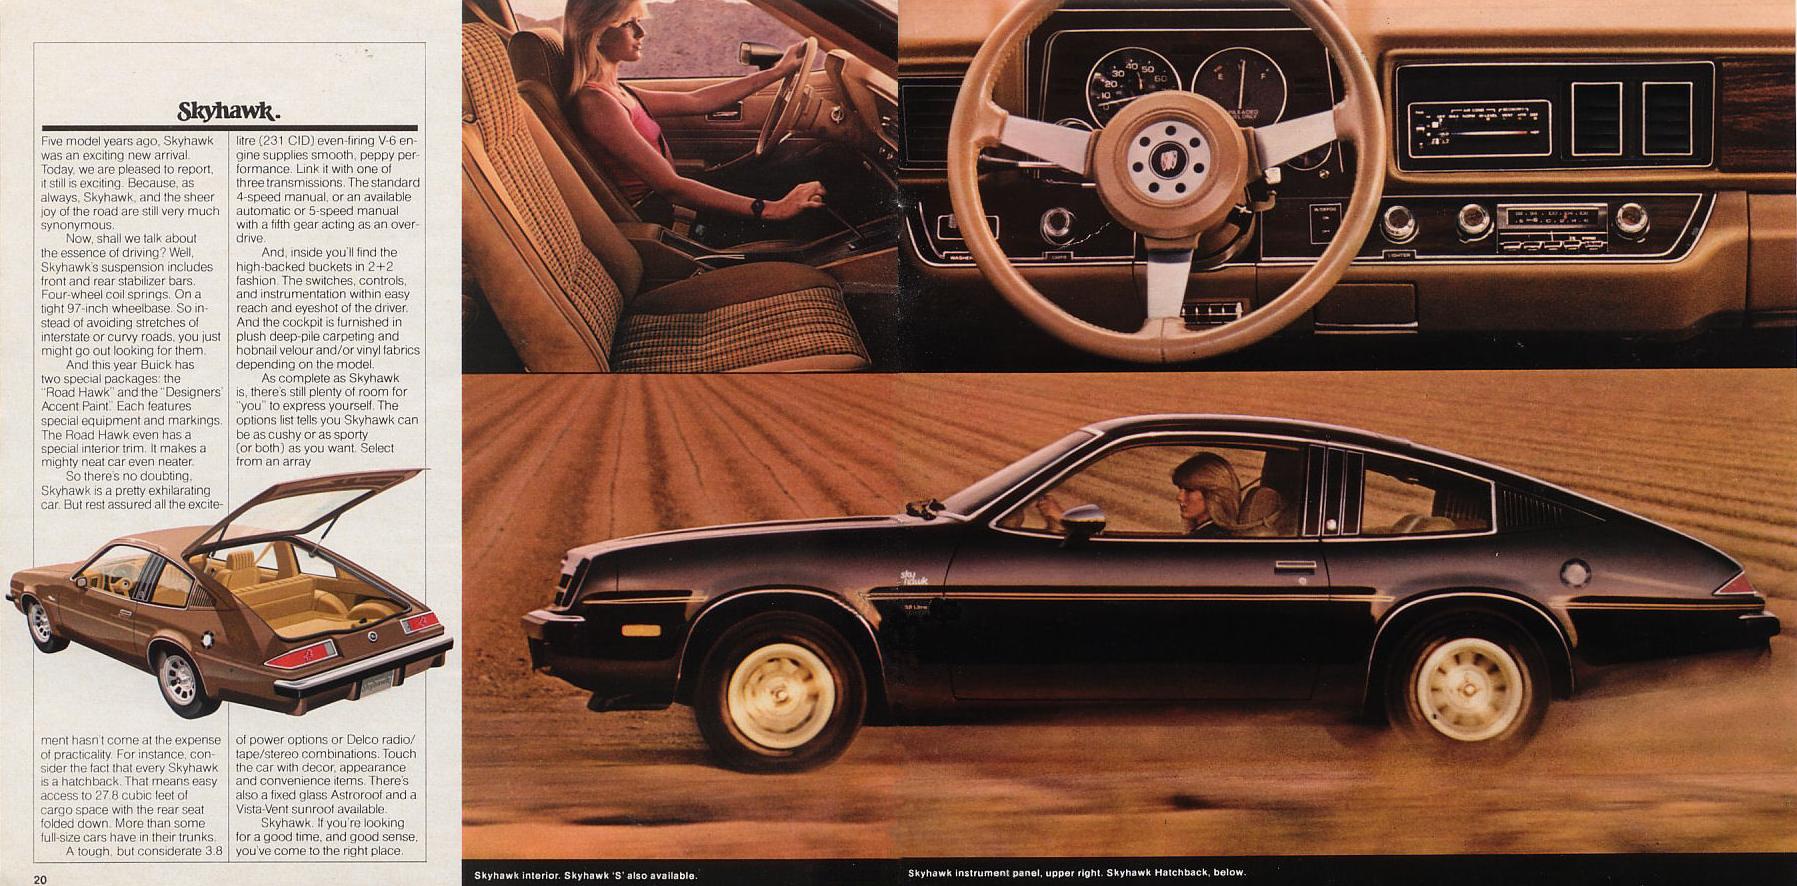 1979 Buick Full Line-20-21